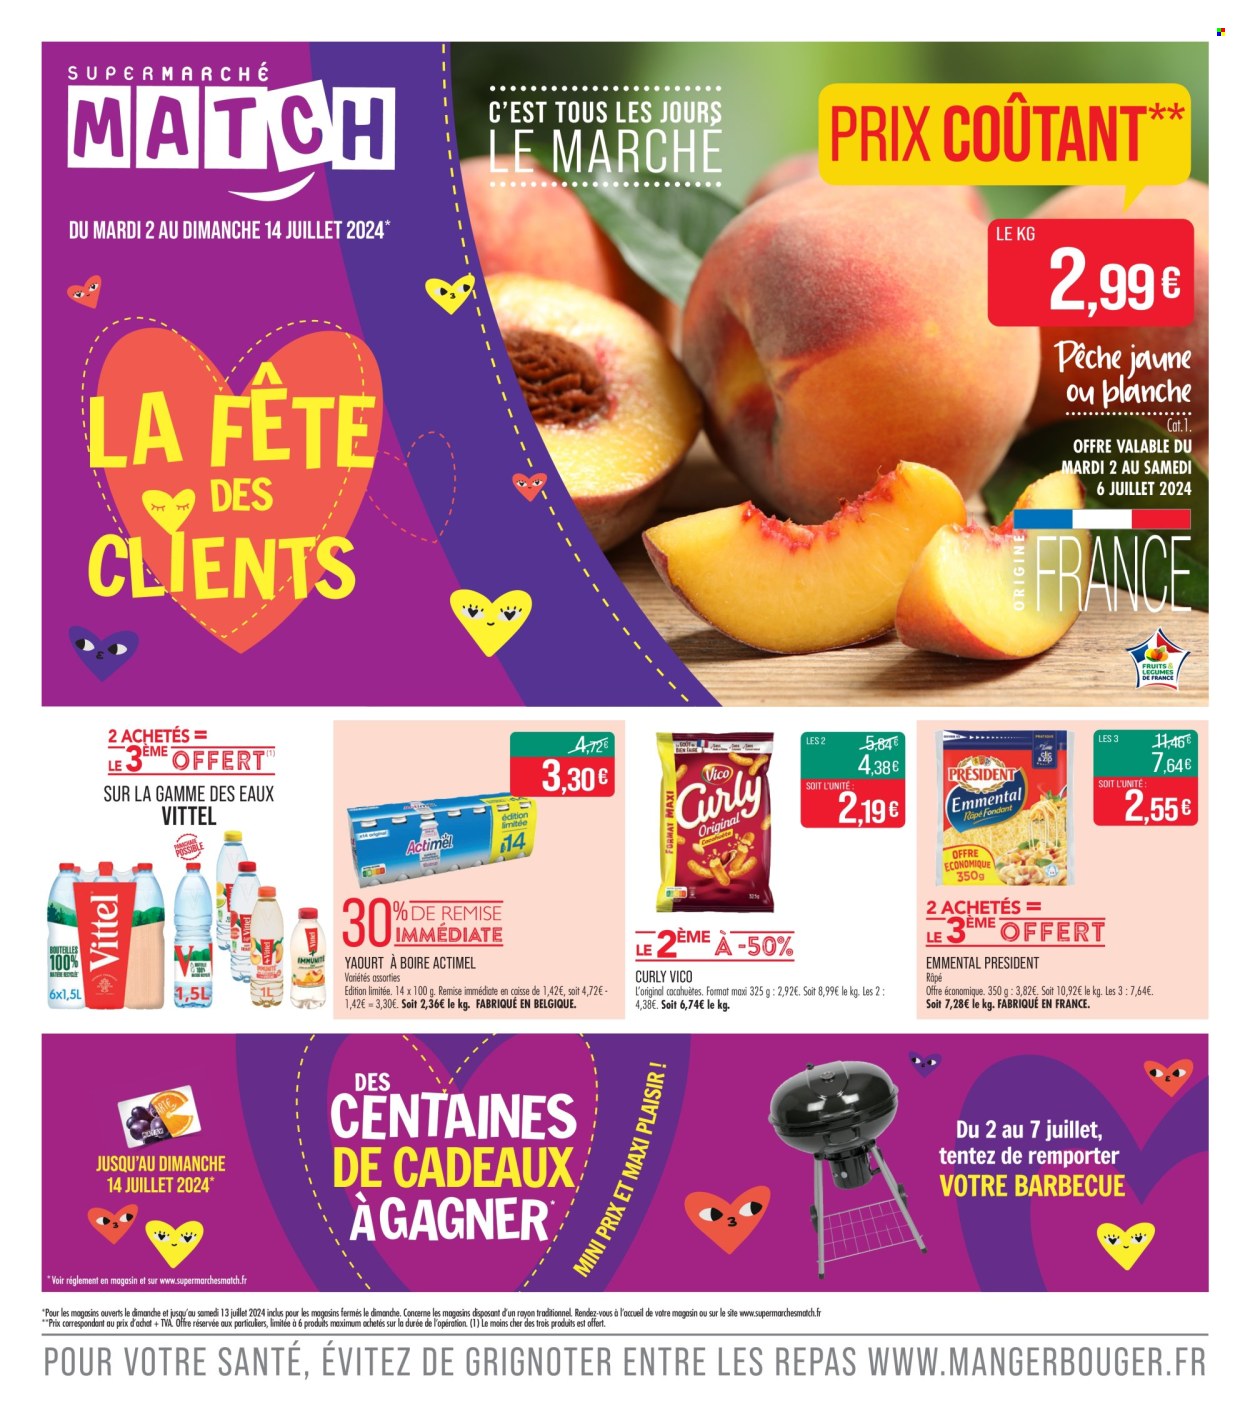 thumbnail - Catalogue Supermarché Match - 02/07/2024 - 14/07/2024 - Produits soldés - emmental, fromage, Président, Actimel, boisson au yaourt, cacahuètes, Vico, Vittel, compléments alimentaires. Page 1.